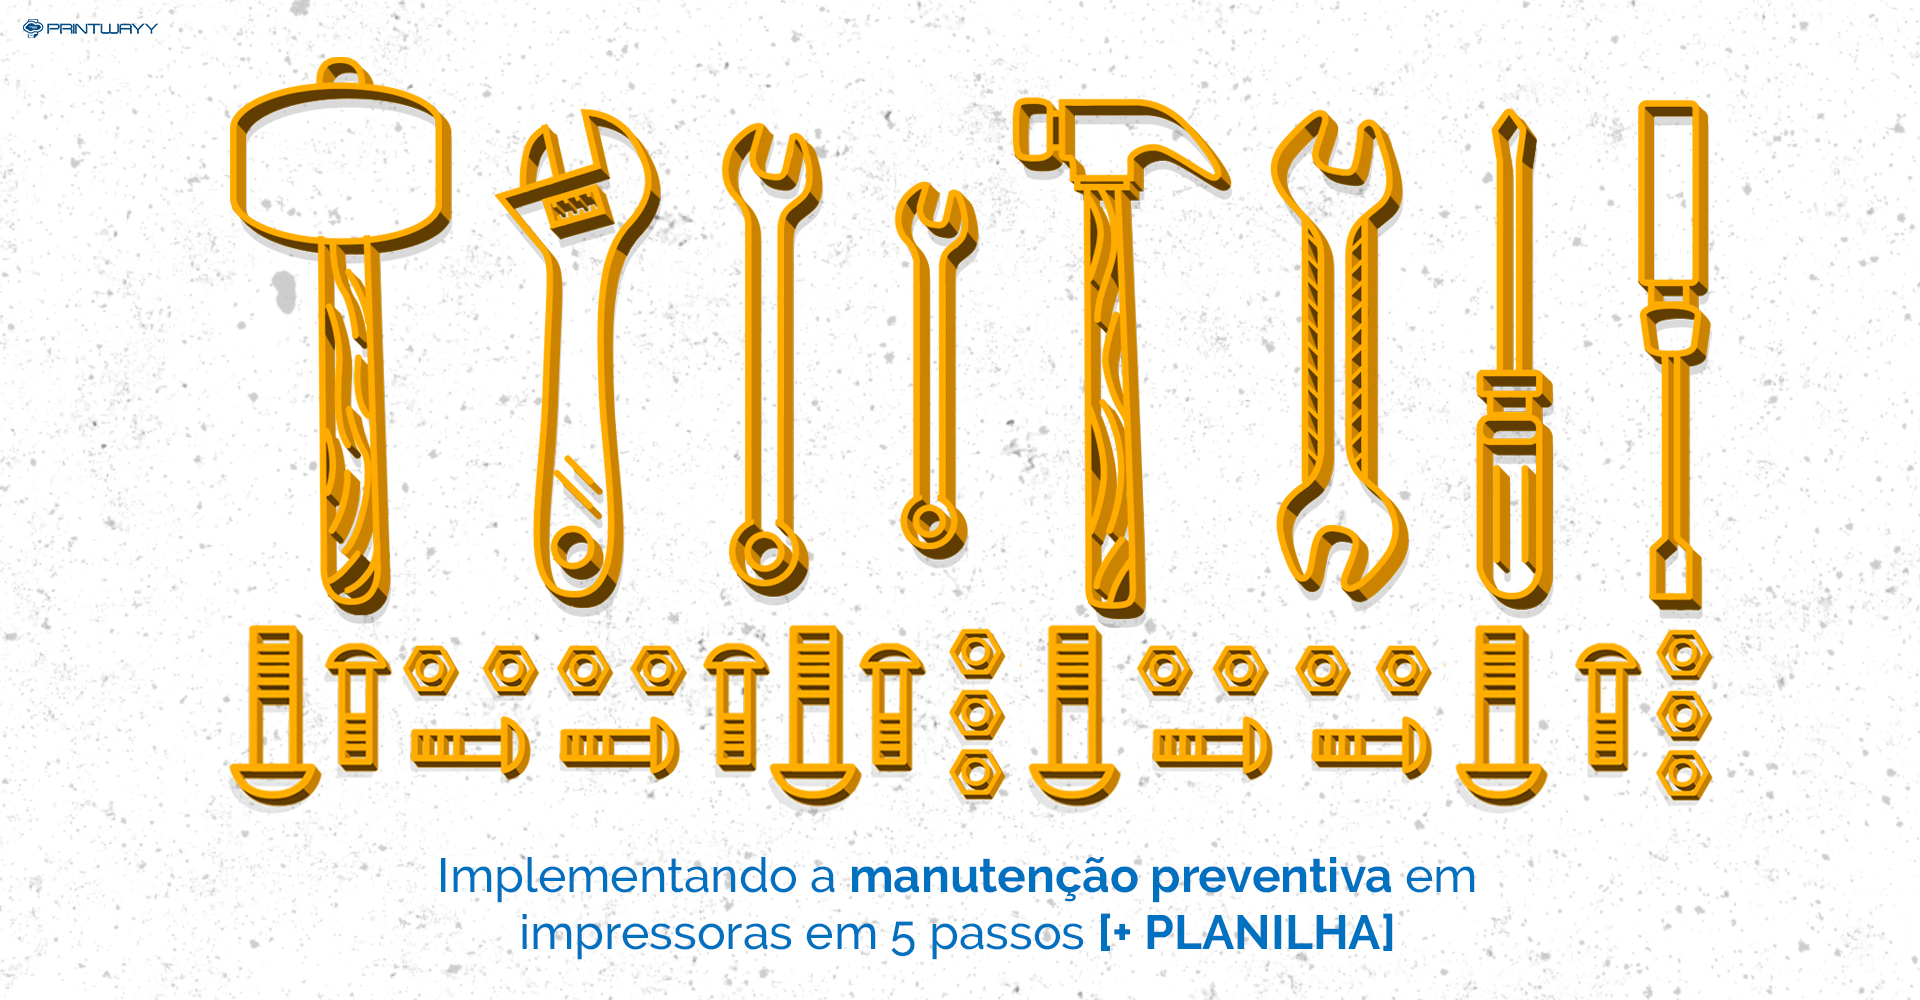 Desenho de ferramentas que simbolizam o trabalho de manutenção preventiva em impressoras.